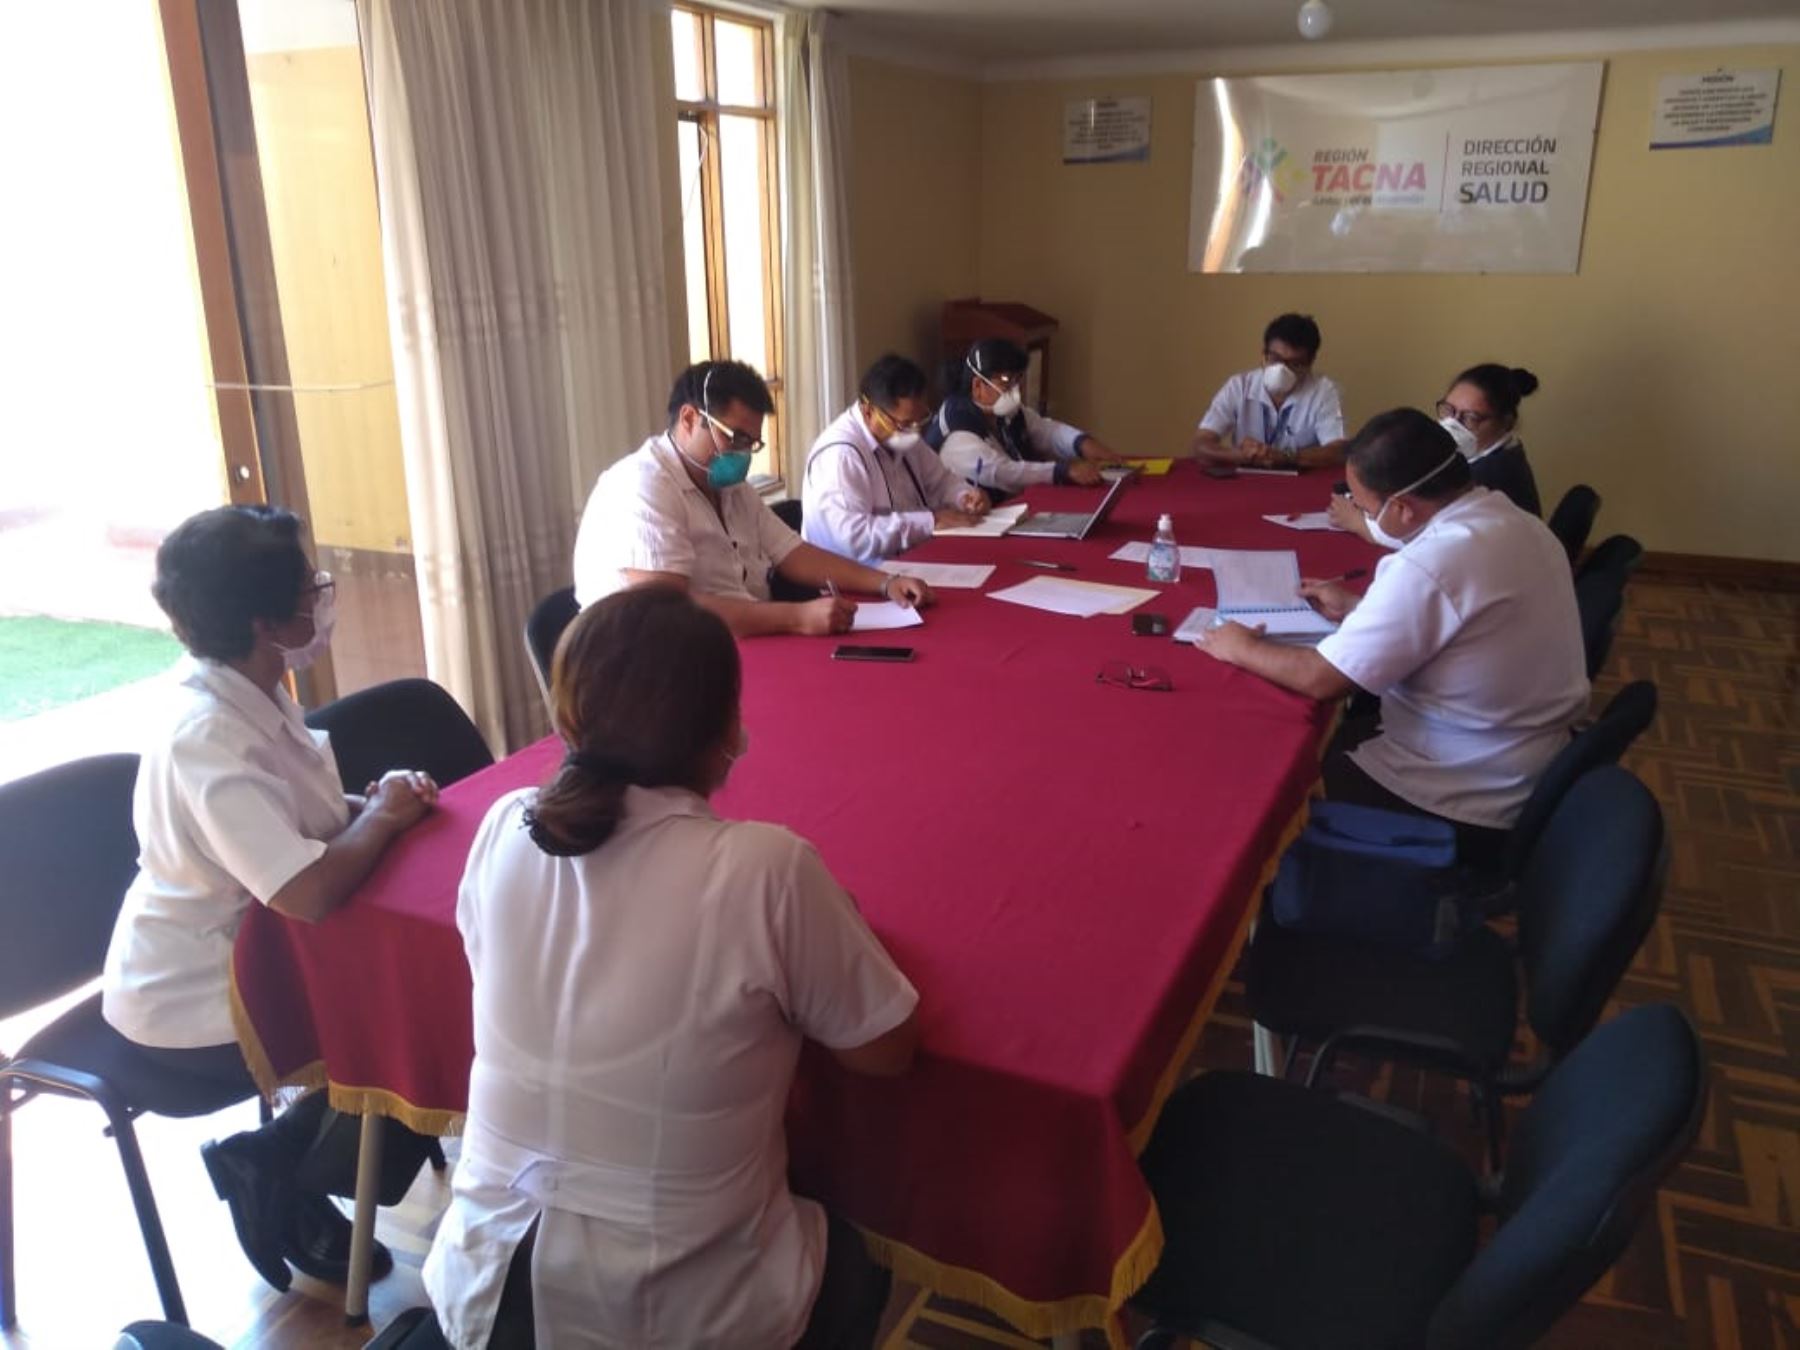 El comando de operaciones para luchar contra covid-19 de Tacna depende de la Dirección Regional de Salud. Foto: Difusión